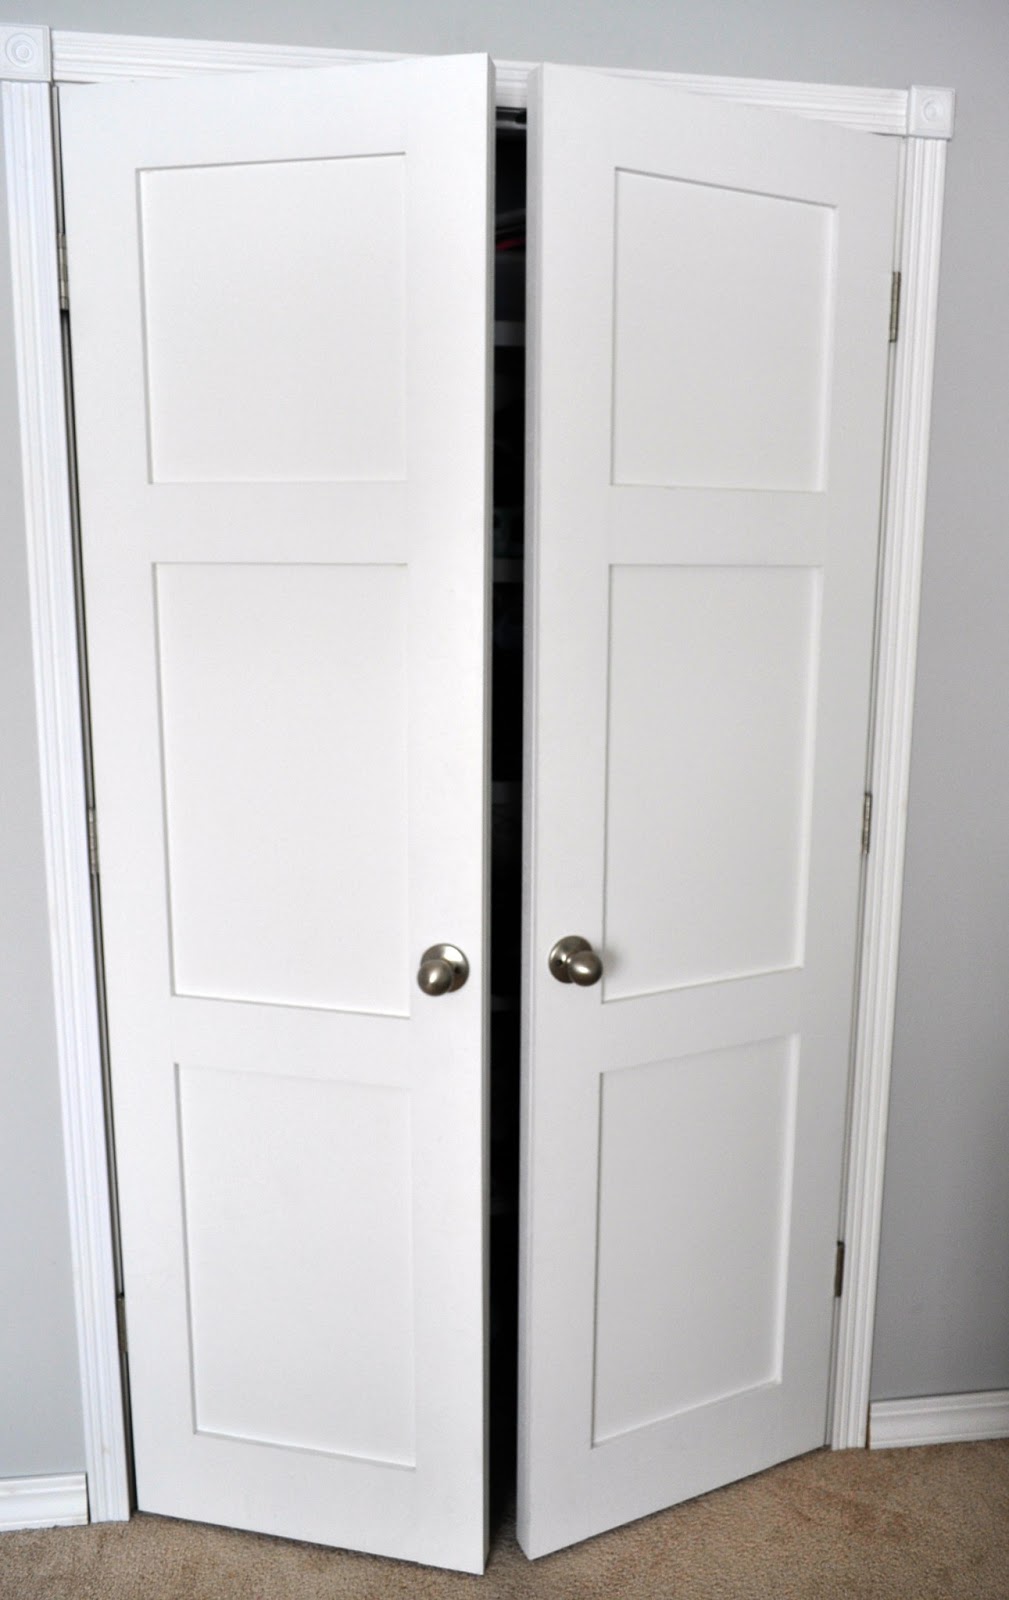 Keep Calm and Decorate: Updating Closet Doors